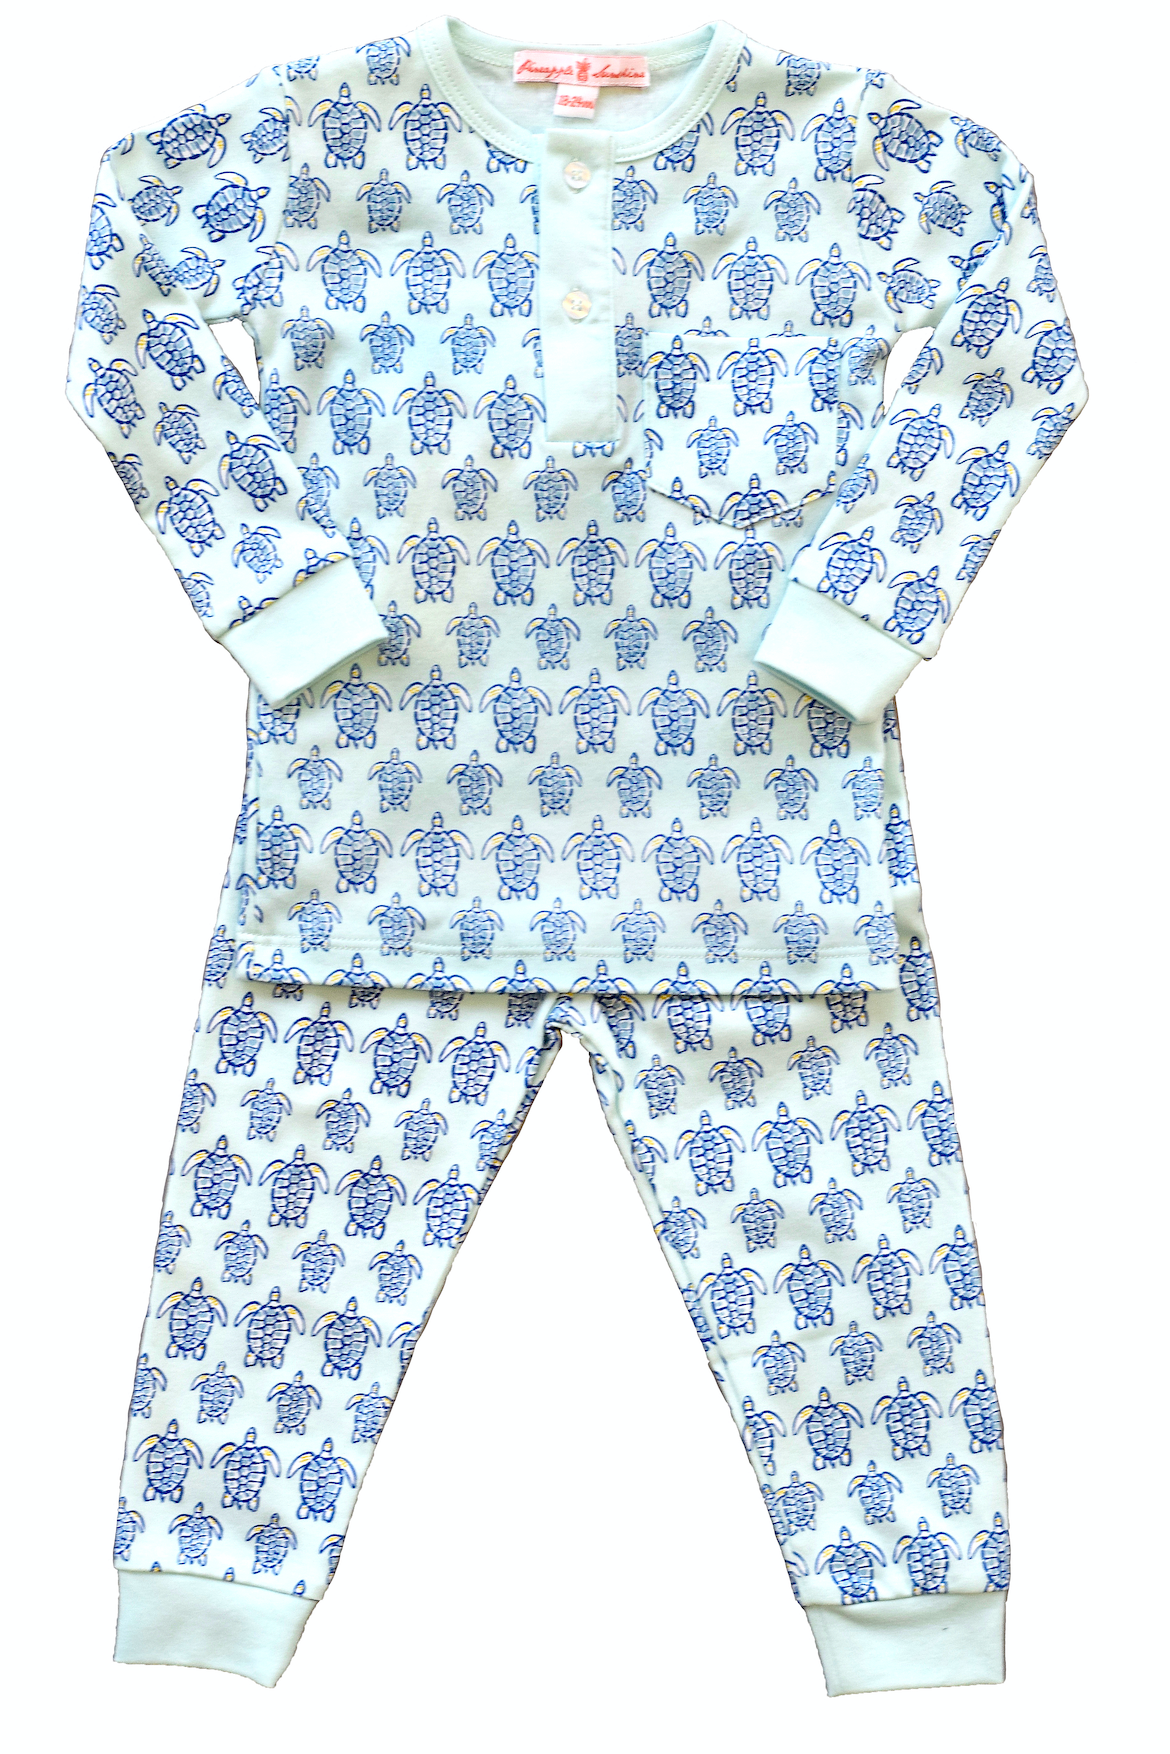 Blue Sea Turtle Pajama Set